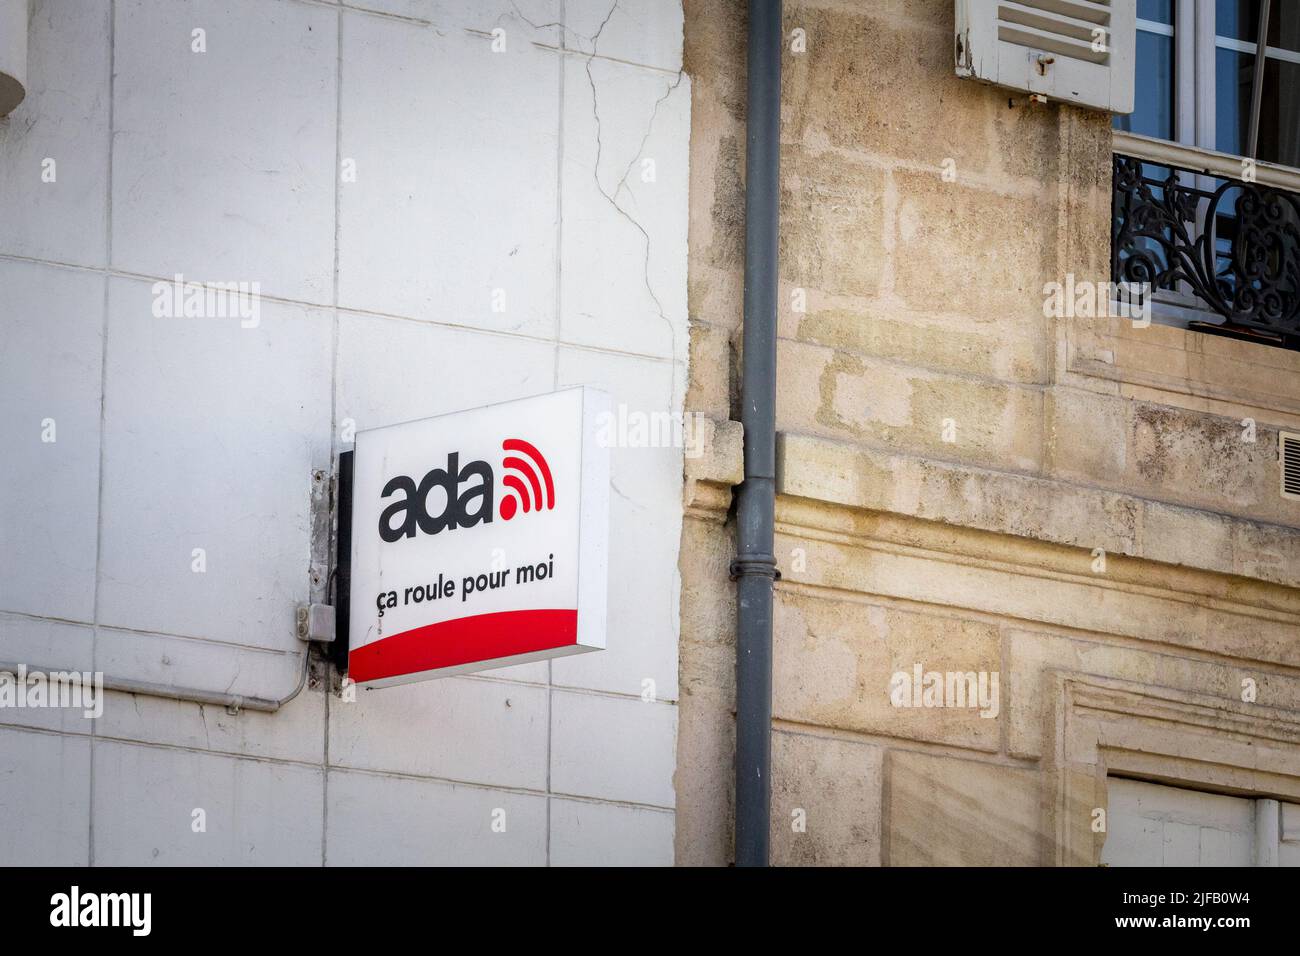 Bild des Zeichens von Ada location Autovermietung auf ihrer Agentur in  Bordeaux, Frankreich. Ada ist eine französische Autovermietung, eine  Tochtergesellschaft der Rousselet Stockfotografie - Alamy